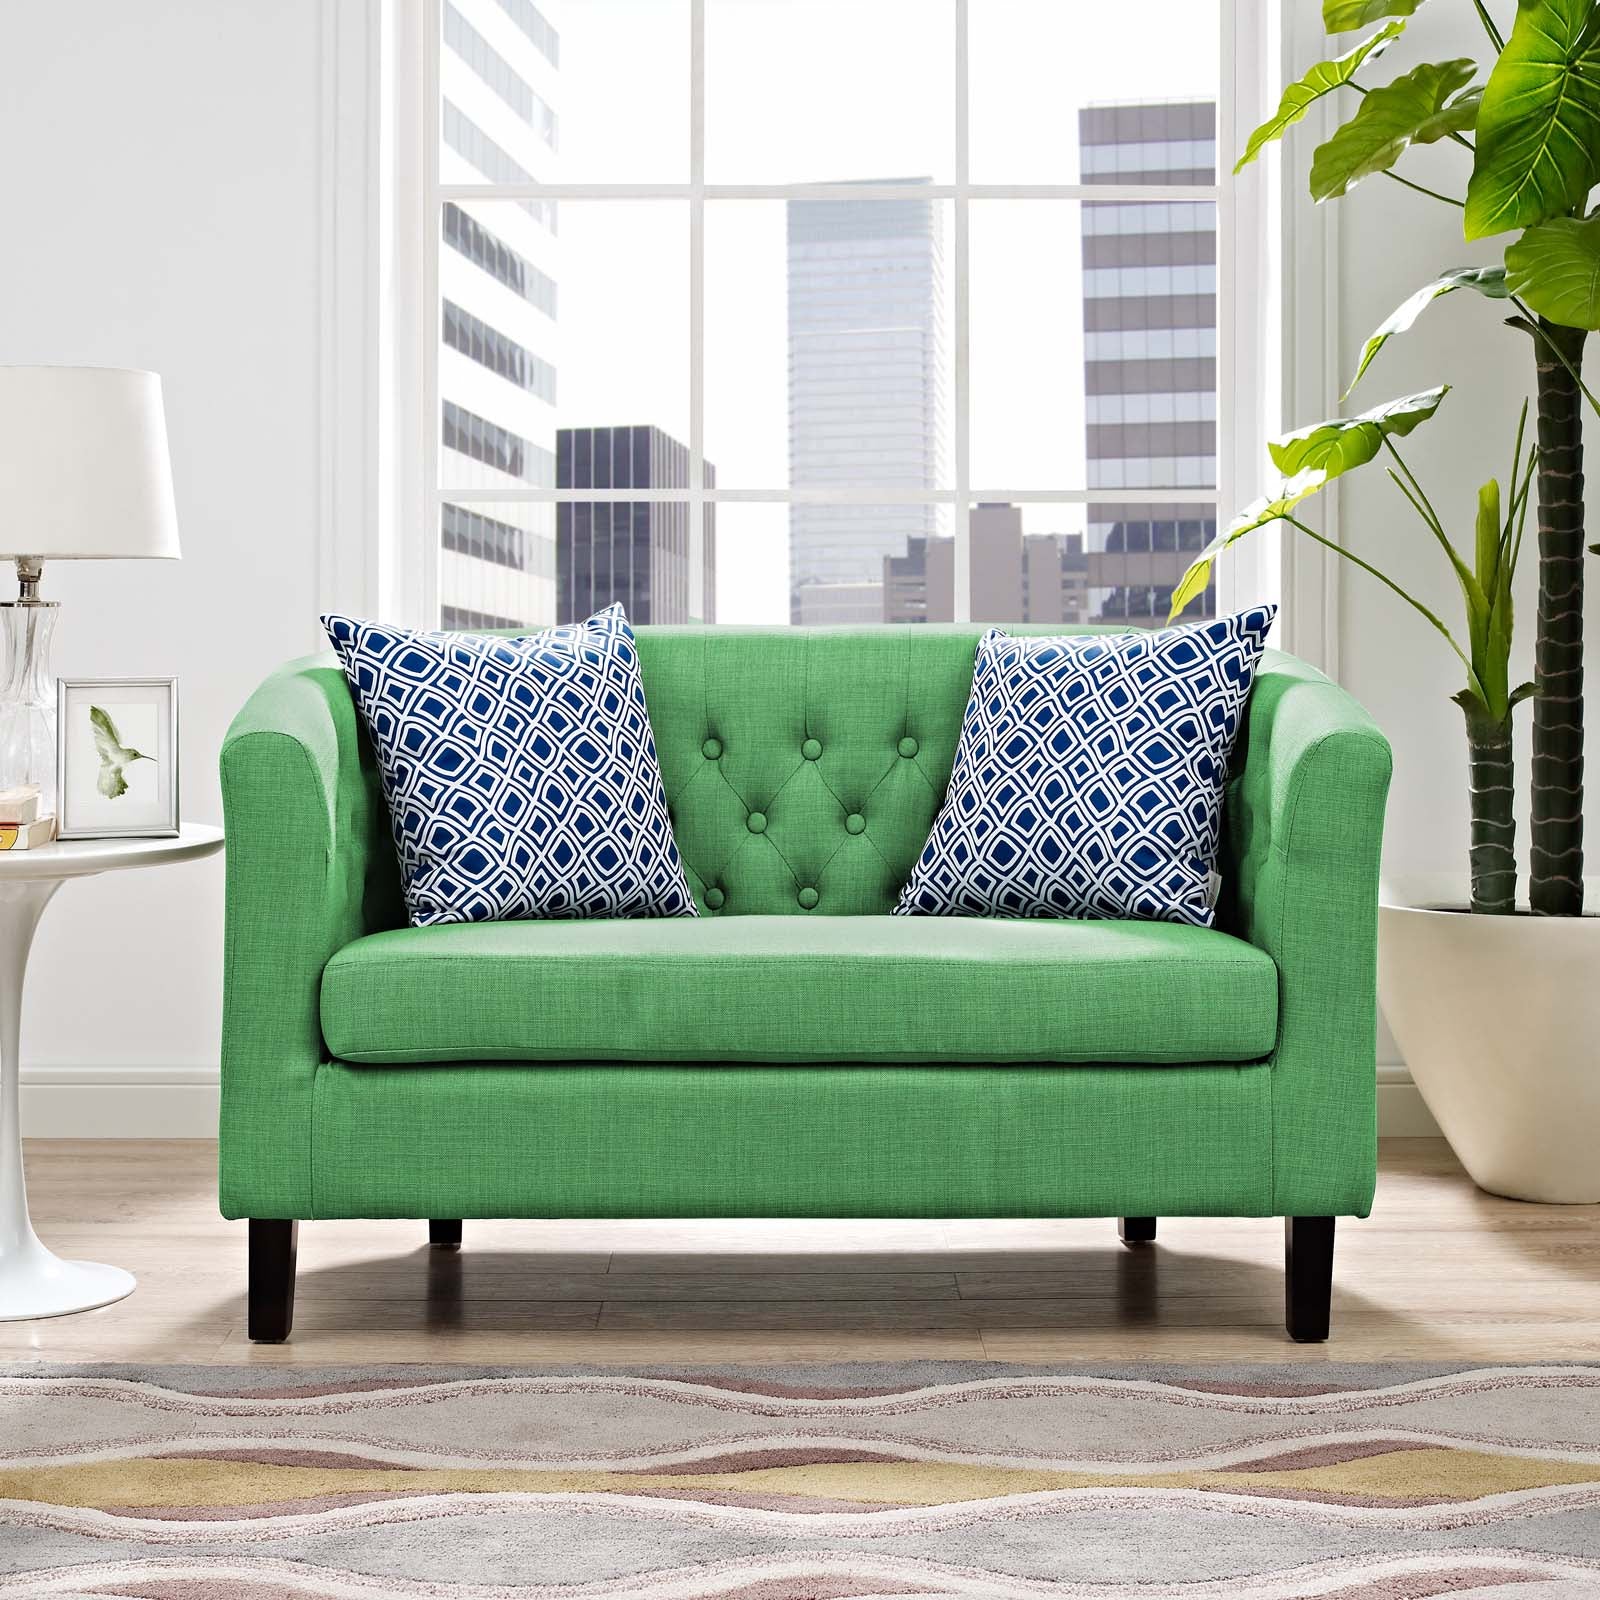 Prospect Upholstered Fabric Loveseat - East Shore Modern Home Furnishings